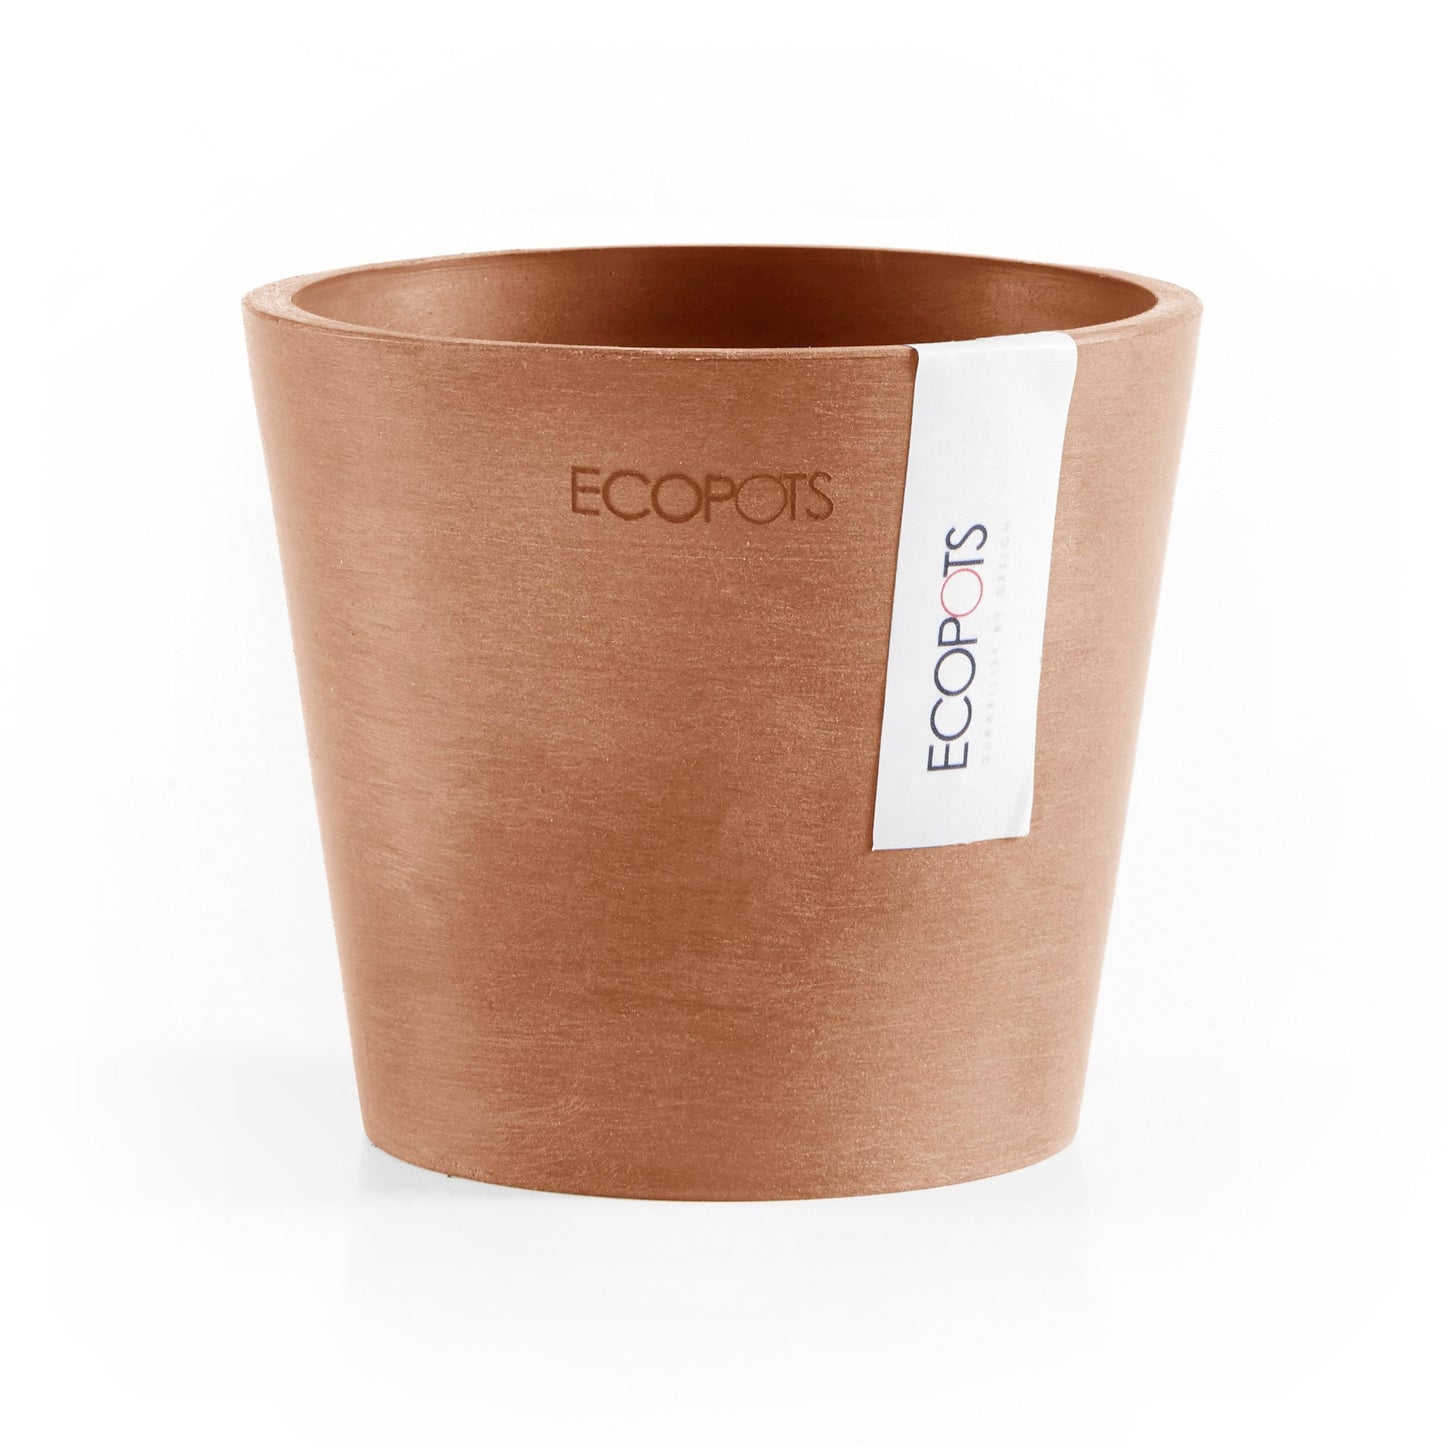 Kukkaruukku - Ecopots - Amsterdam 10,5cm terracotta - Ecopotskauppa - Uuden aikakauden kukkaruukku